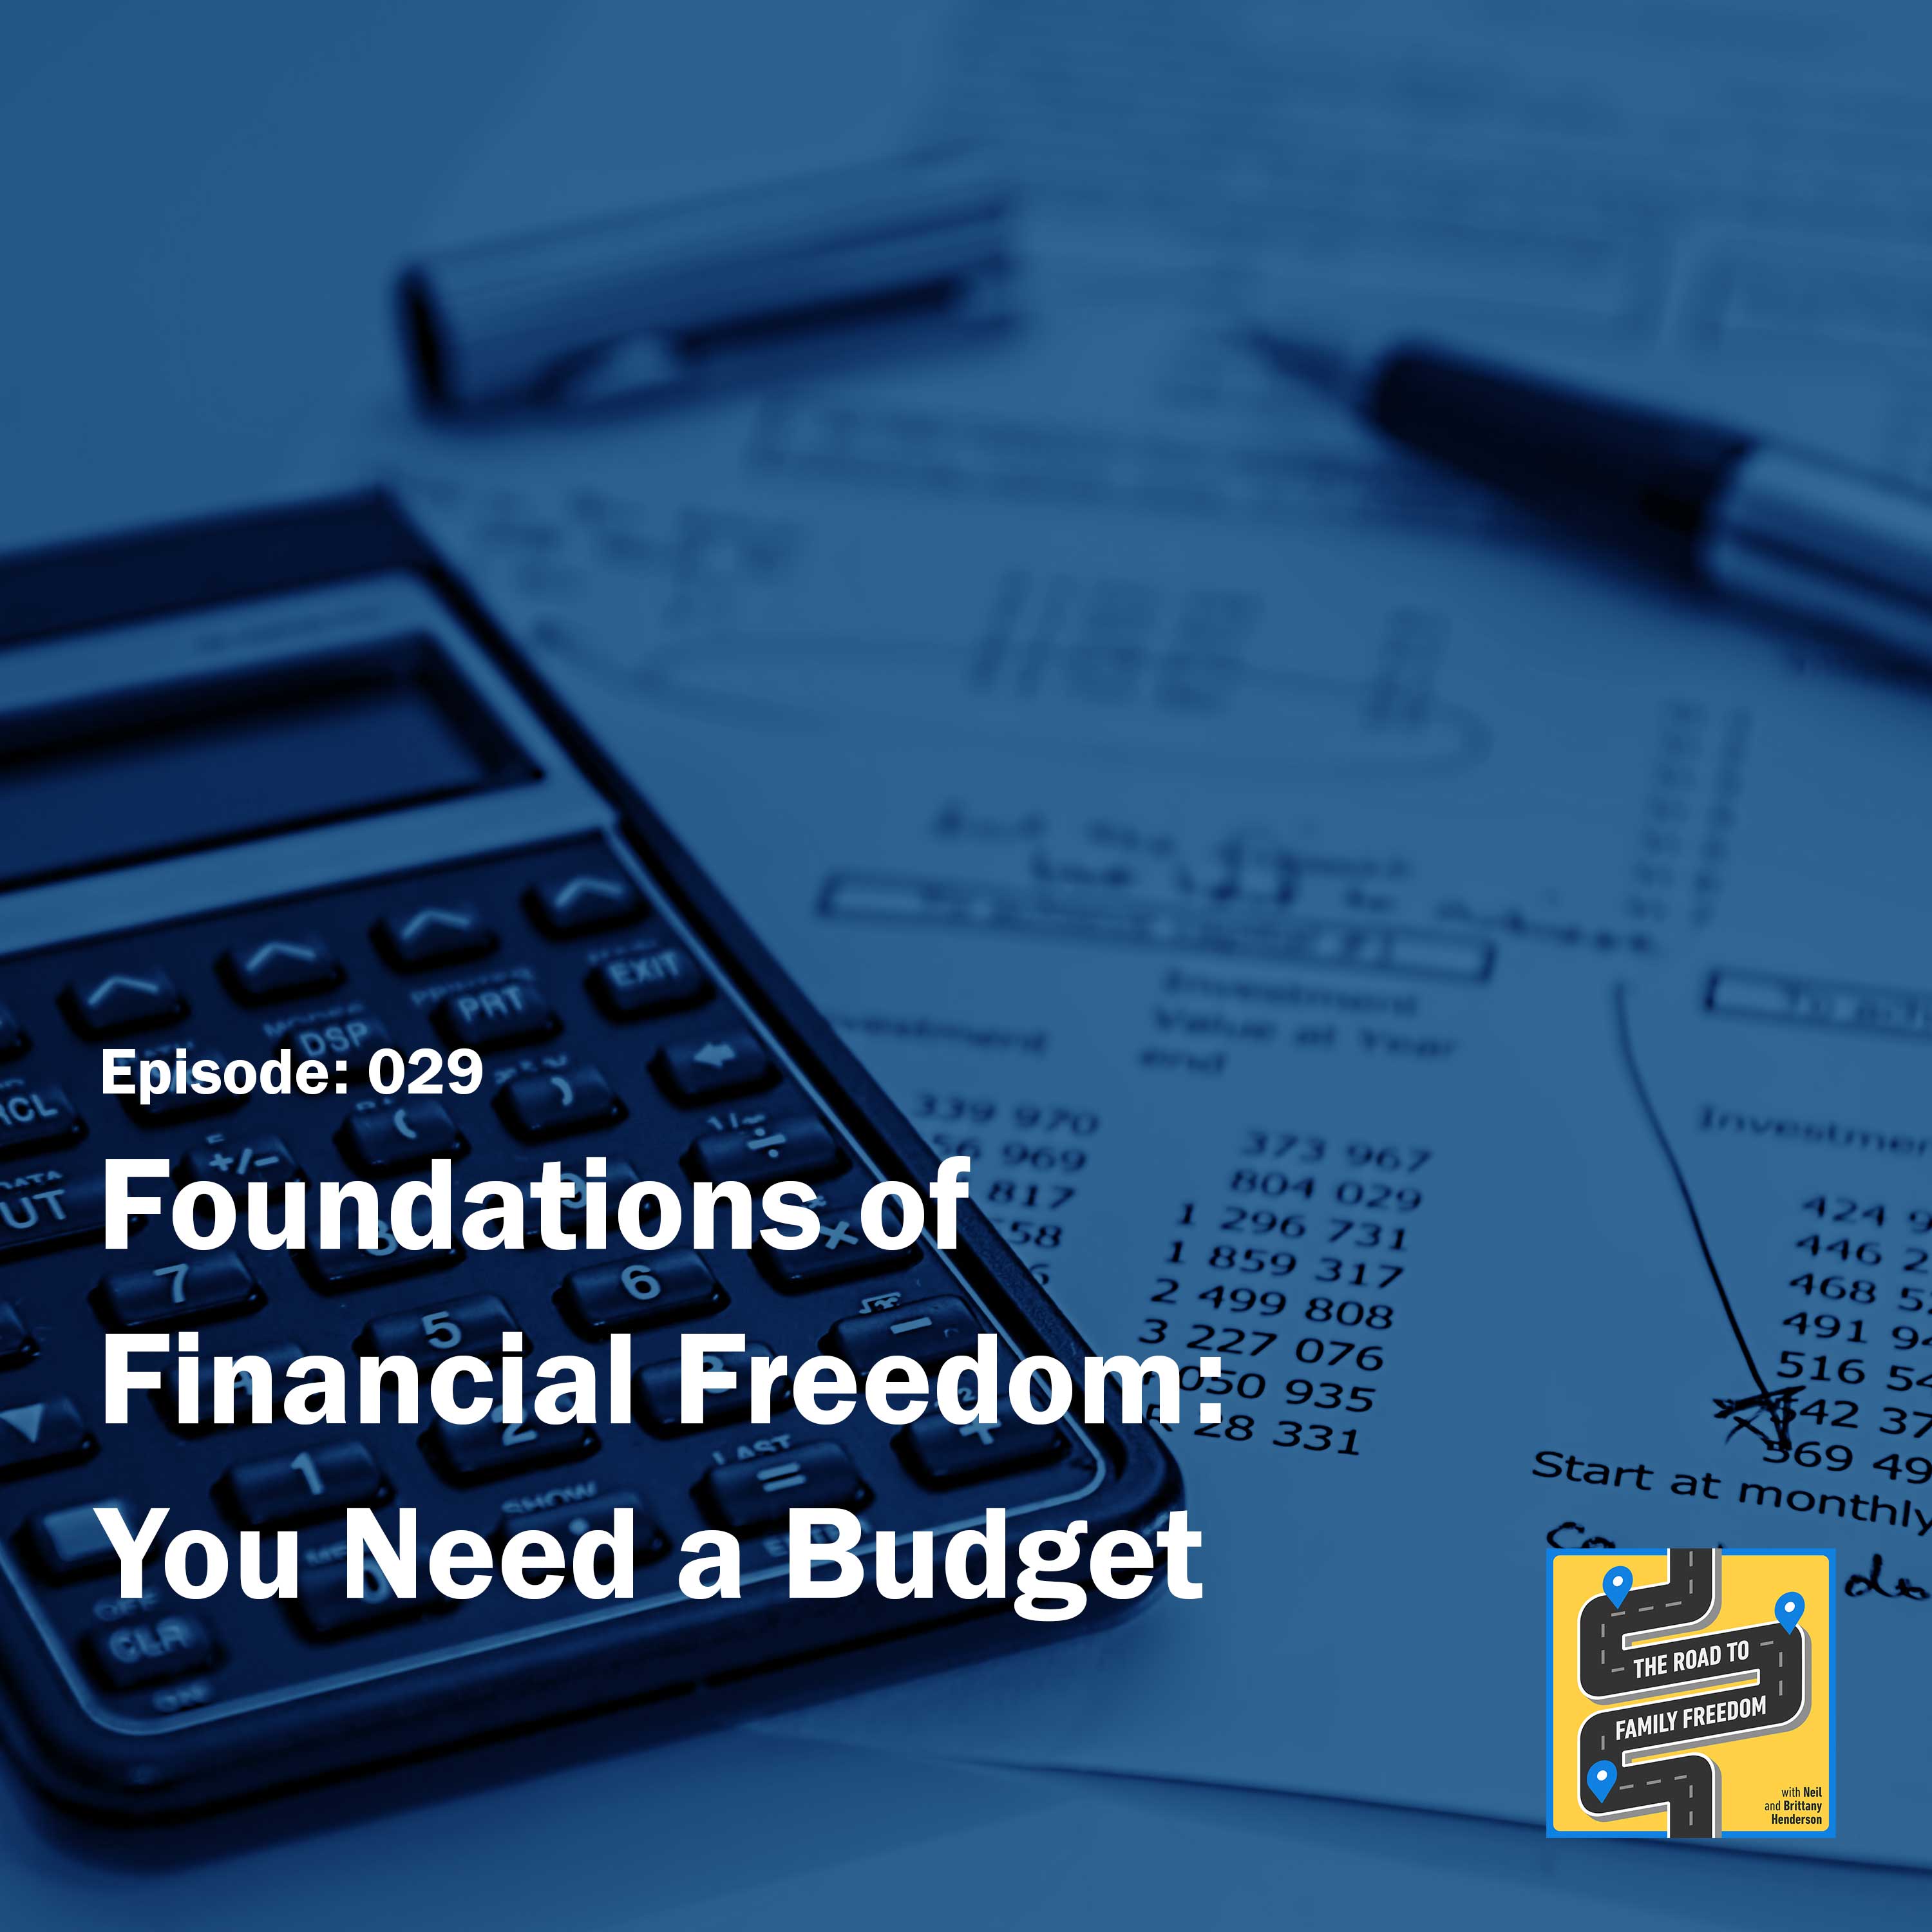 Fundamentals – You Need a Budget